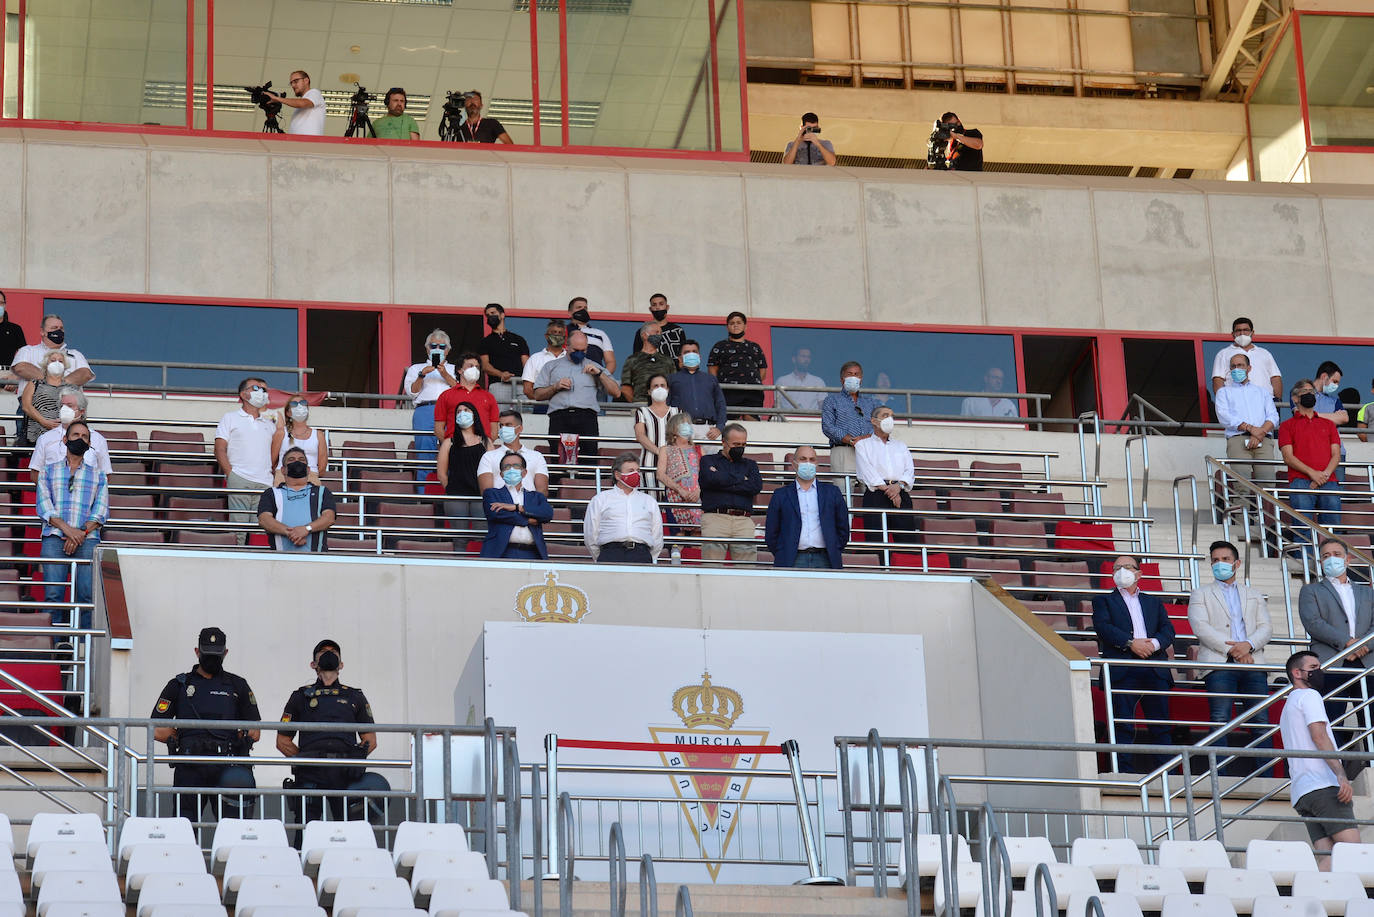 Fotos: La victoria del Real Murcia frente al Marchamalo, en imágenes